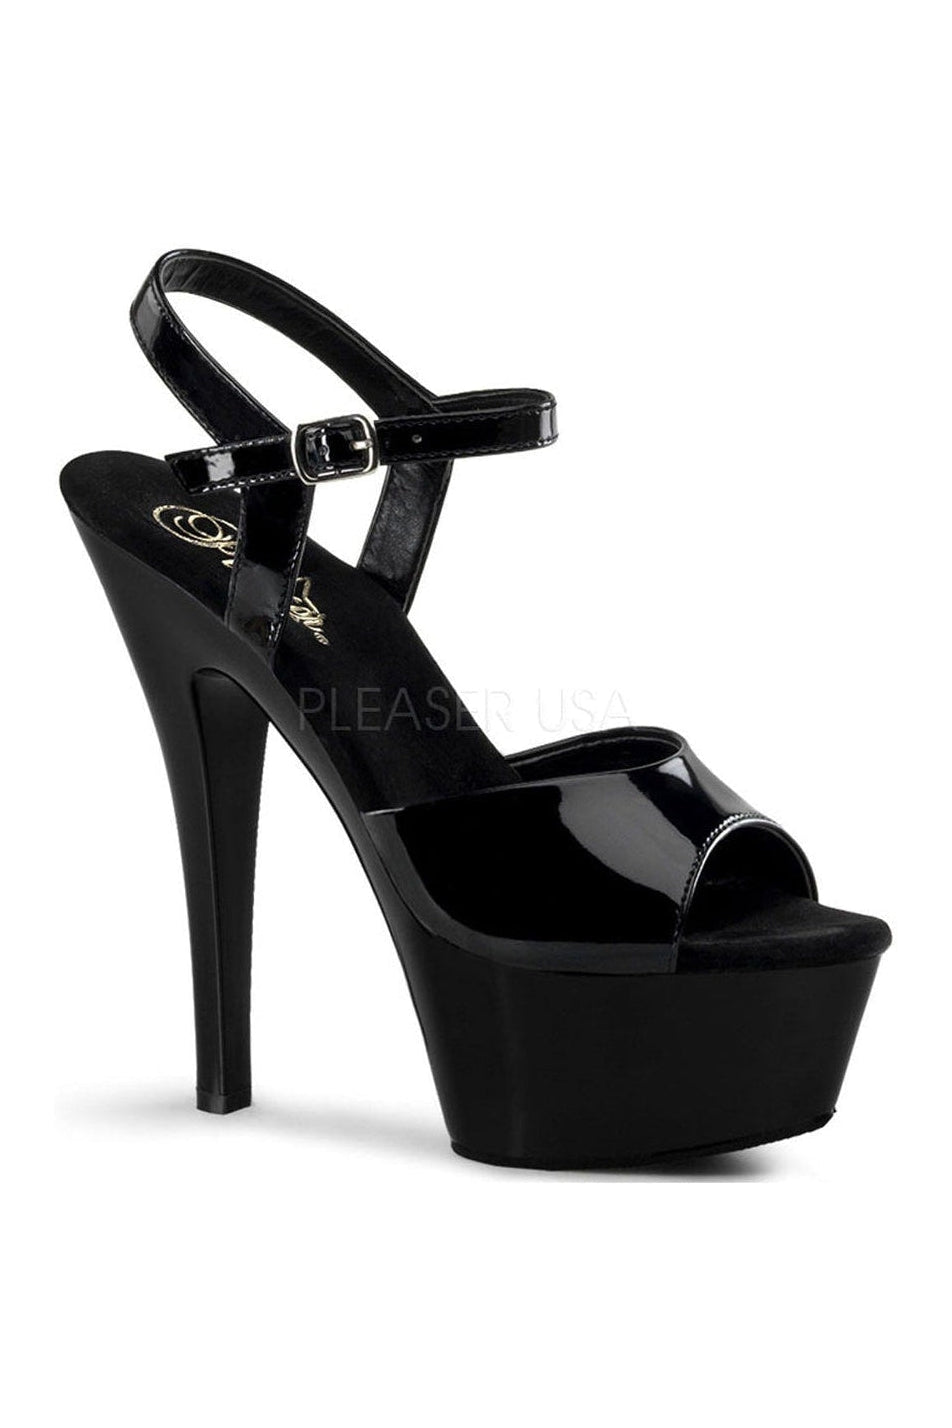 KISS-209 Platform Sandal | Black Patent-Pleaser-Black-Sandals-SEXYSHOES.COM